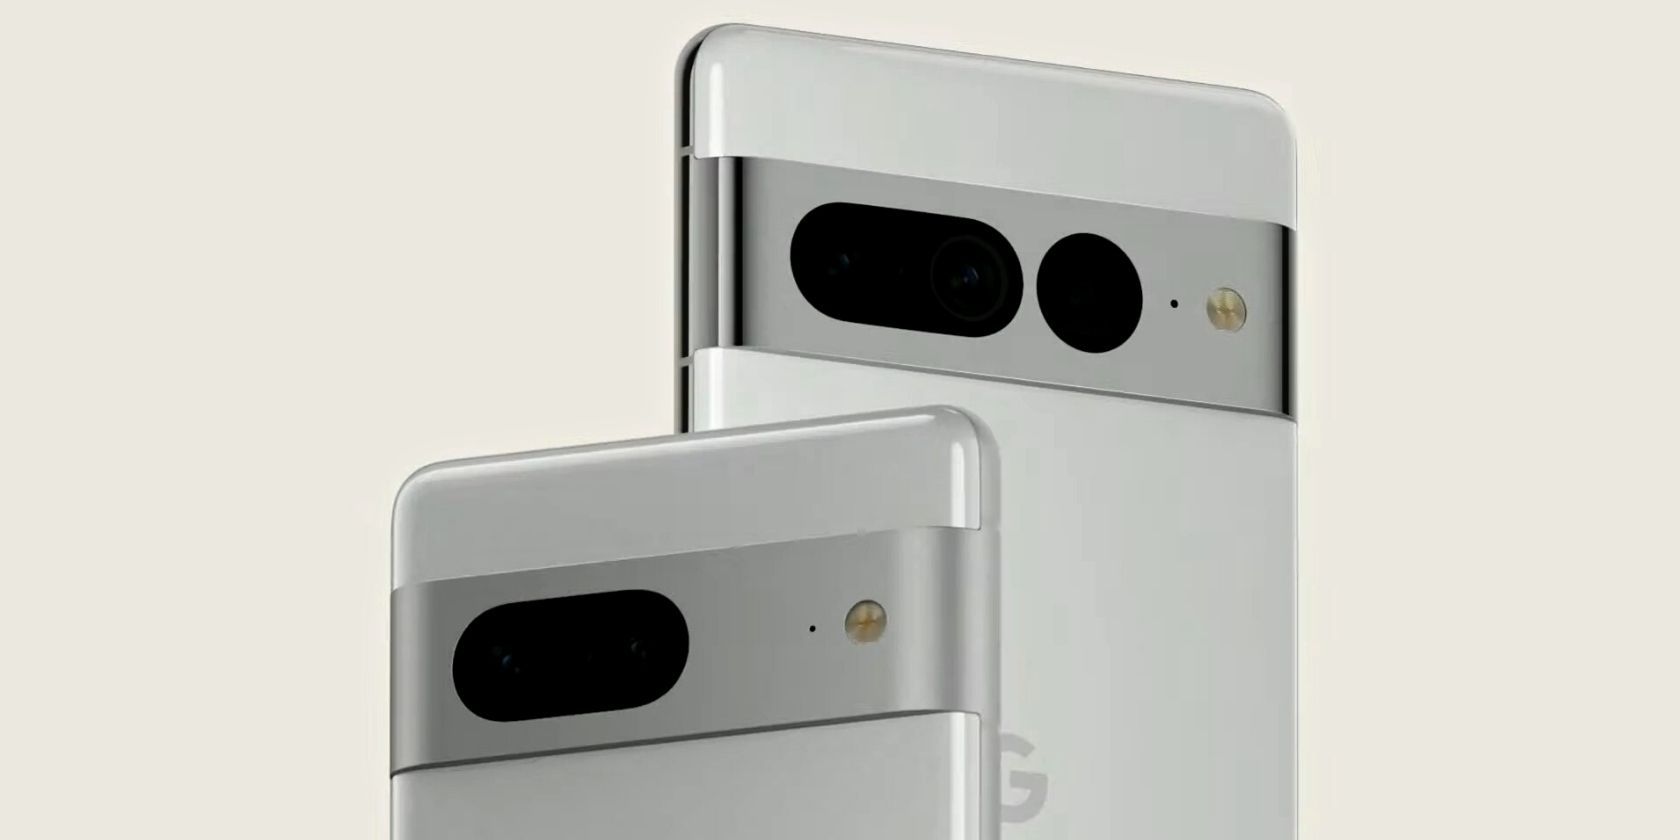 Pixel 7 and Pixel 7 Pro camera bar design